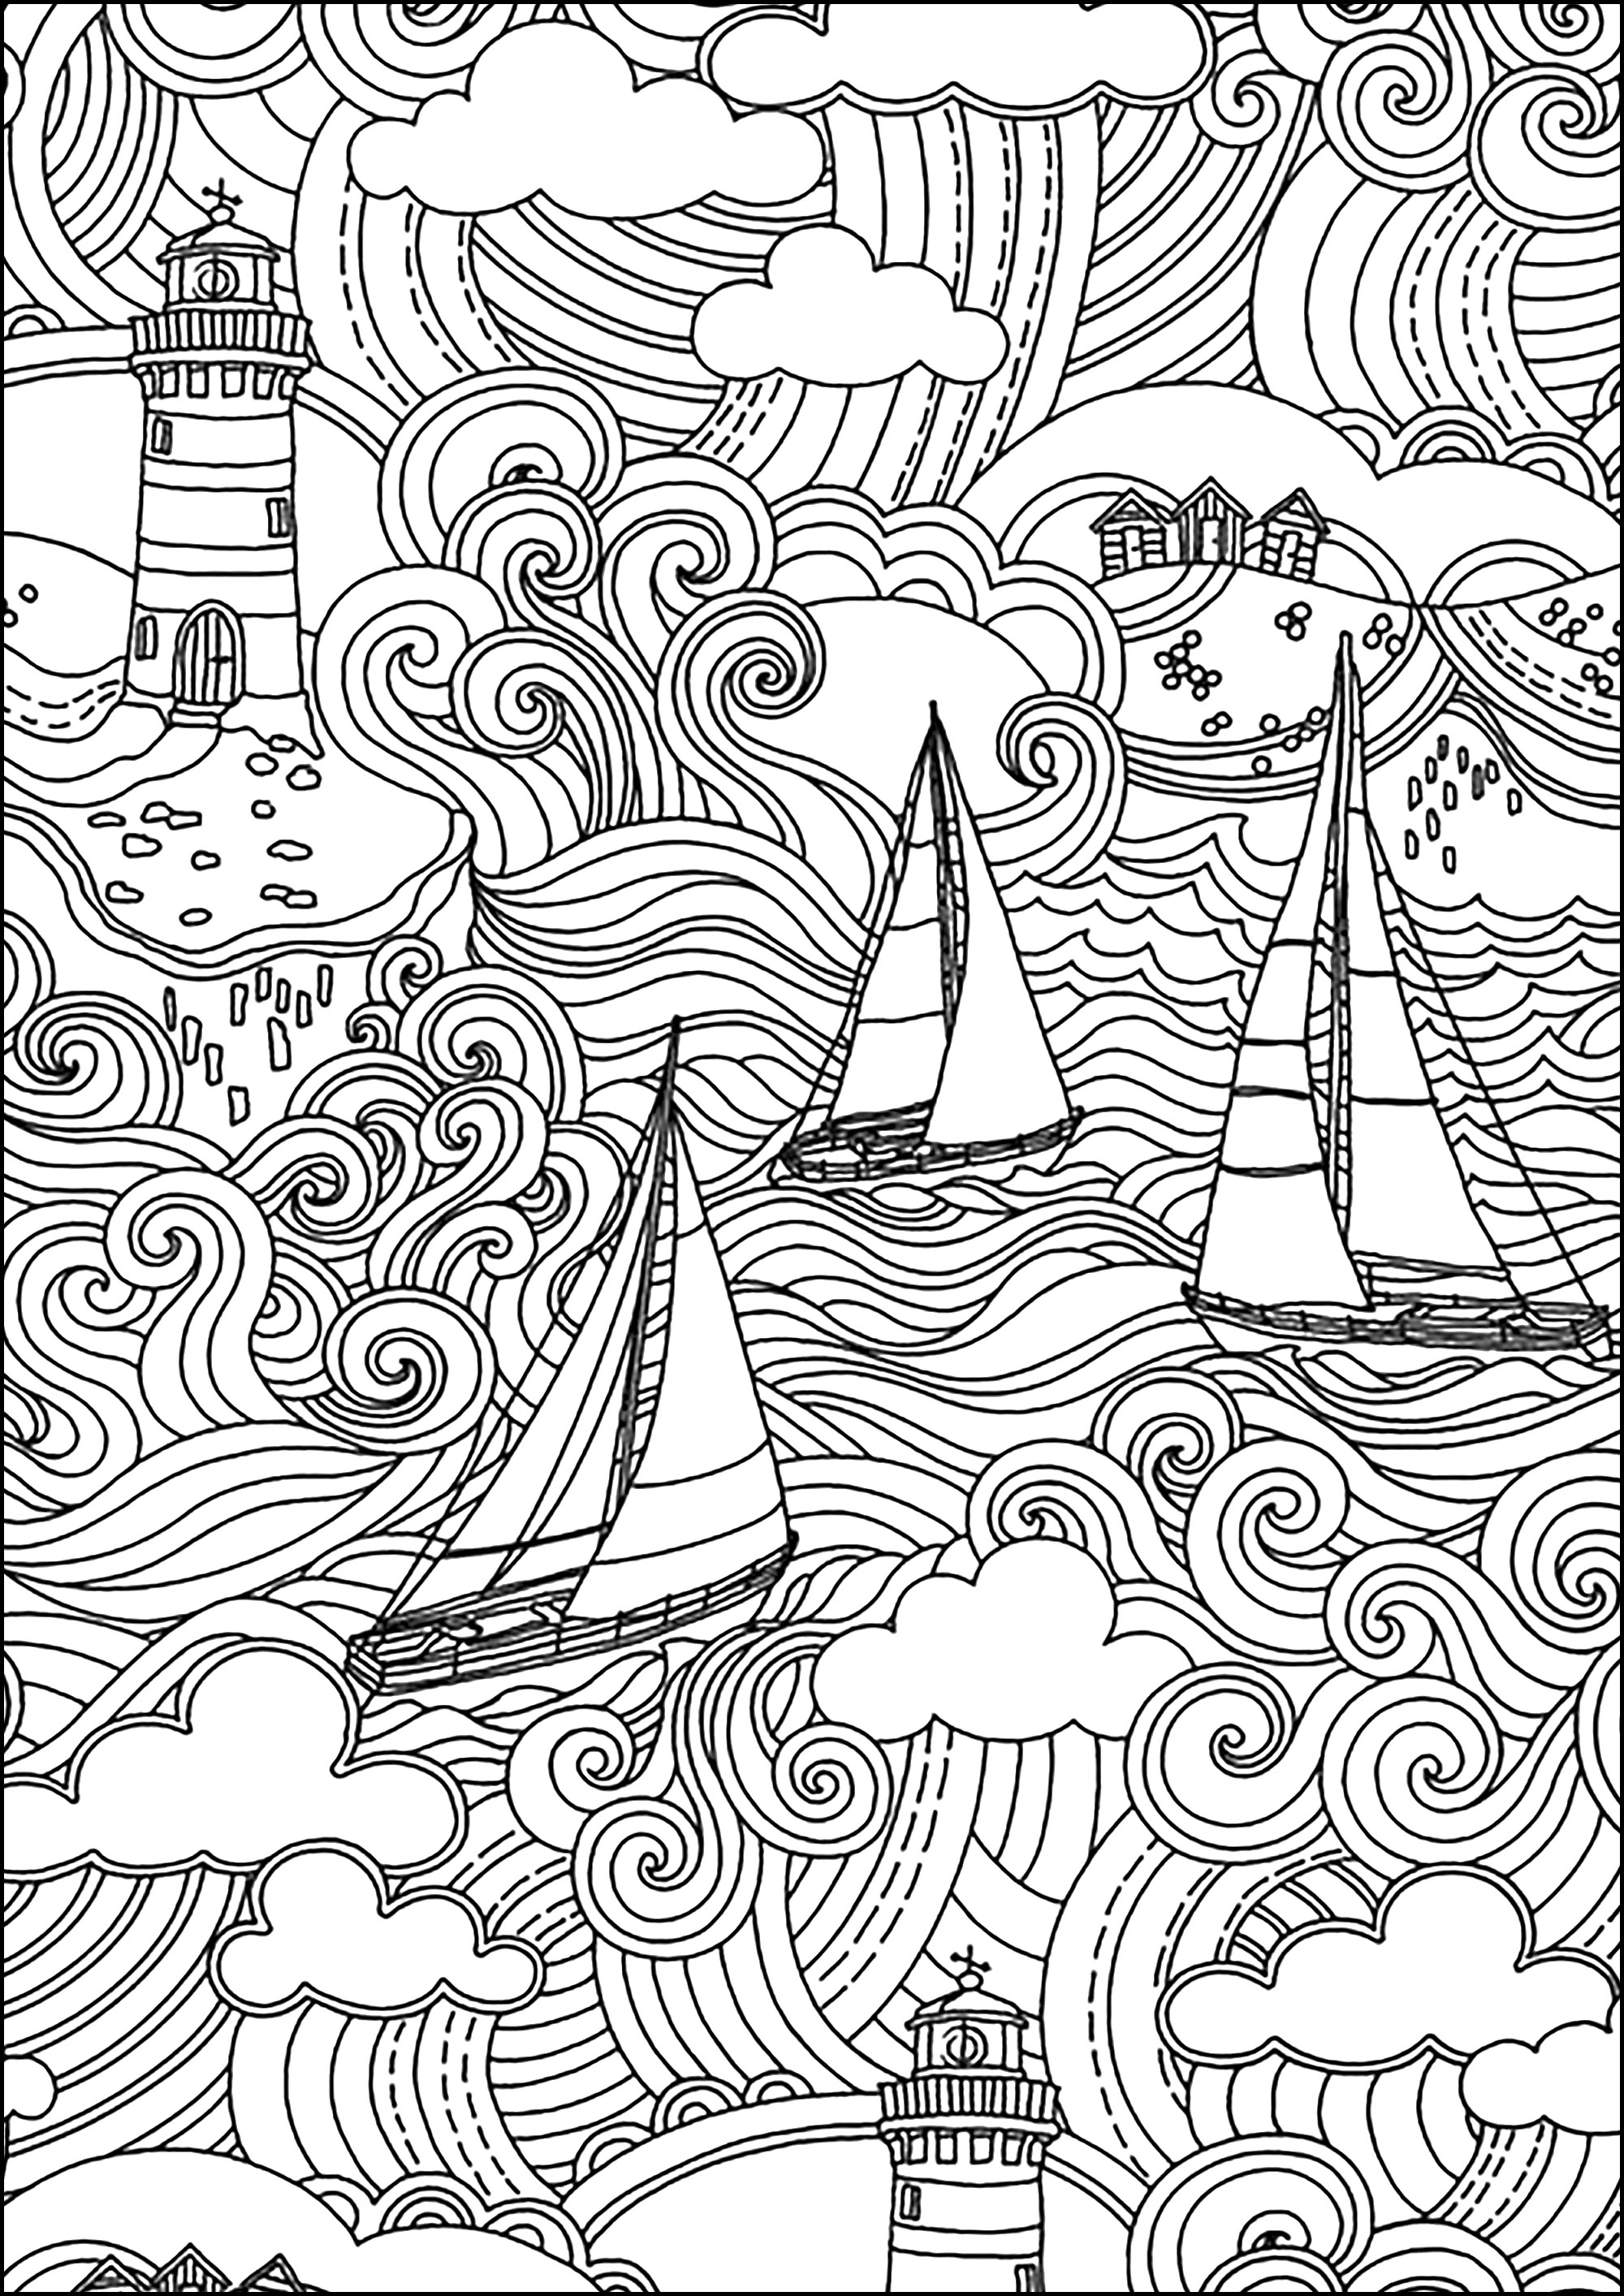 Magnifique scène marine avec phare, bateaux, vagues et ciel nuageux